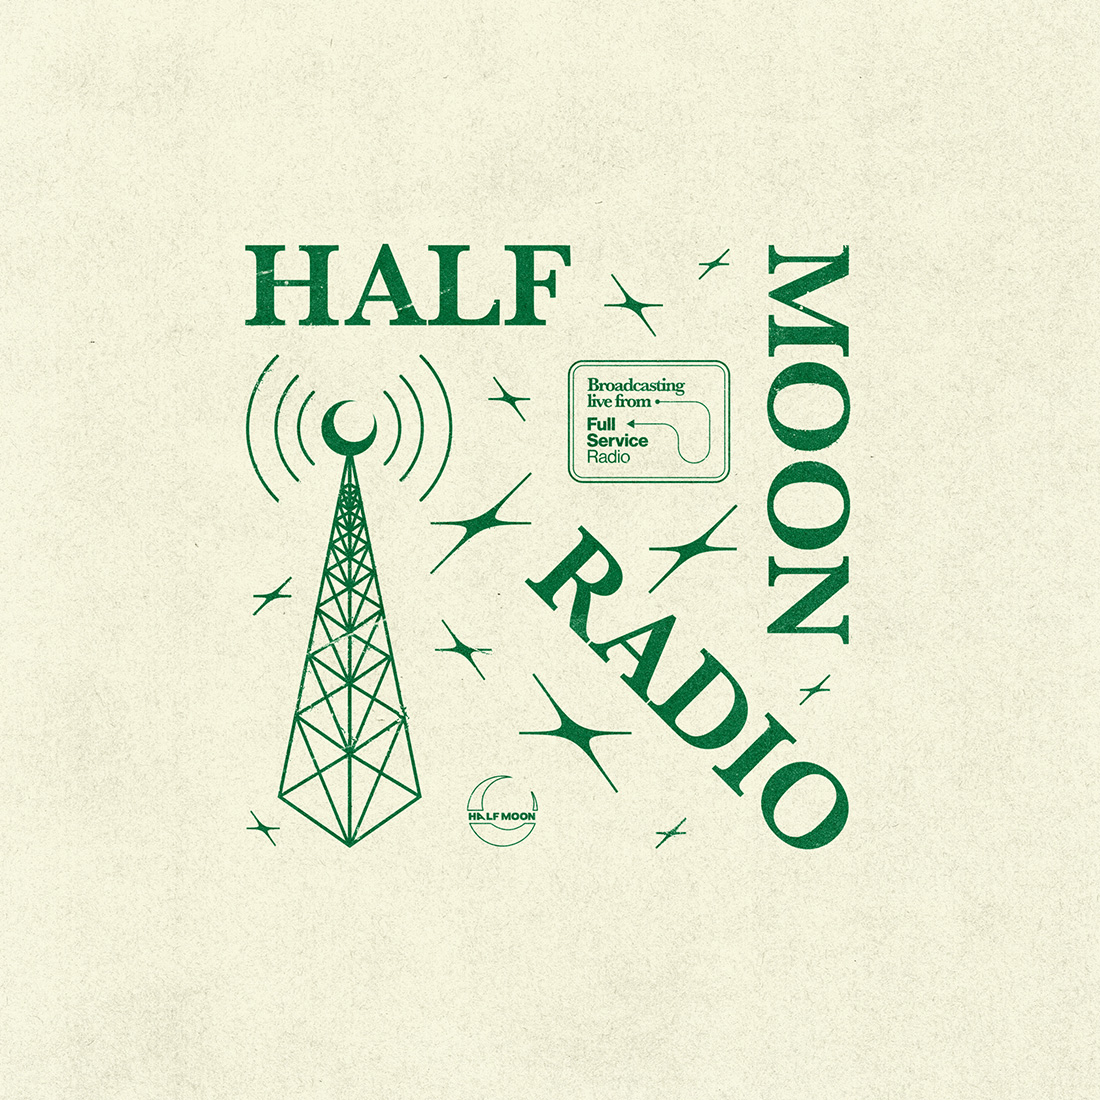 Half moon radio